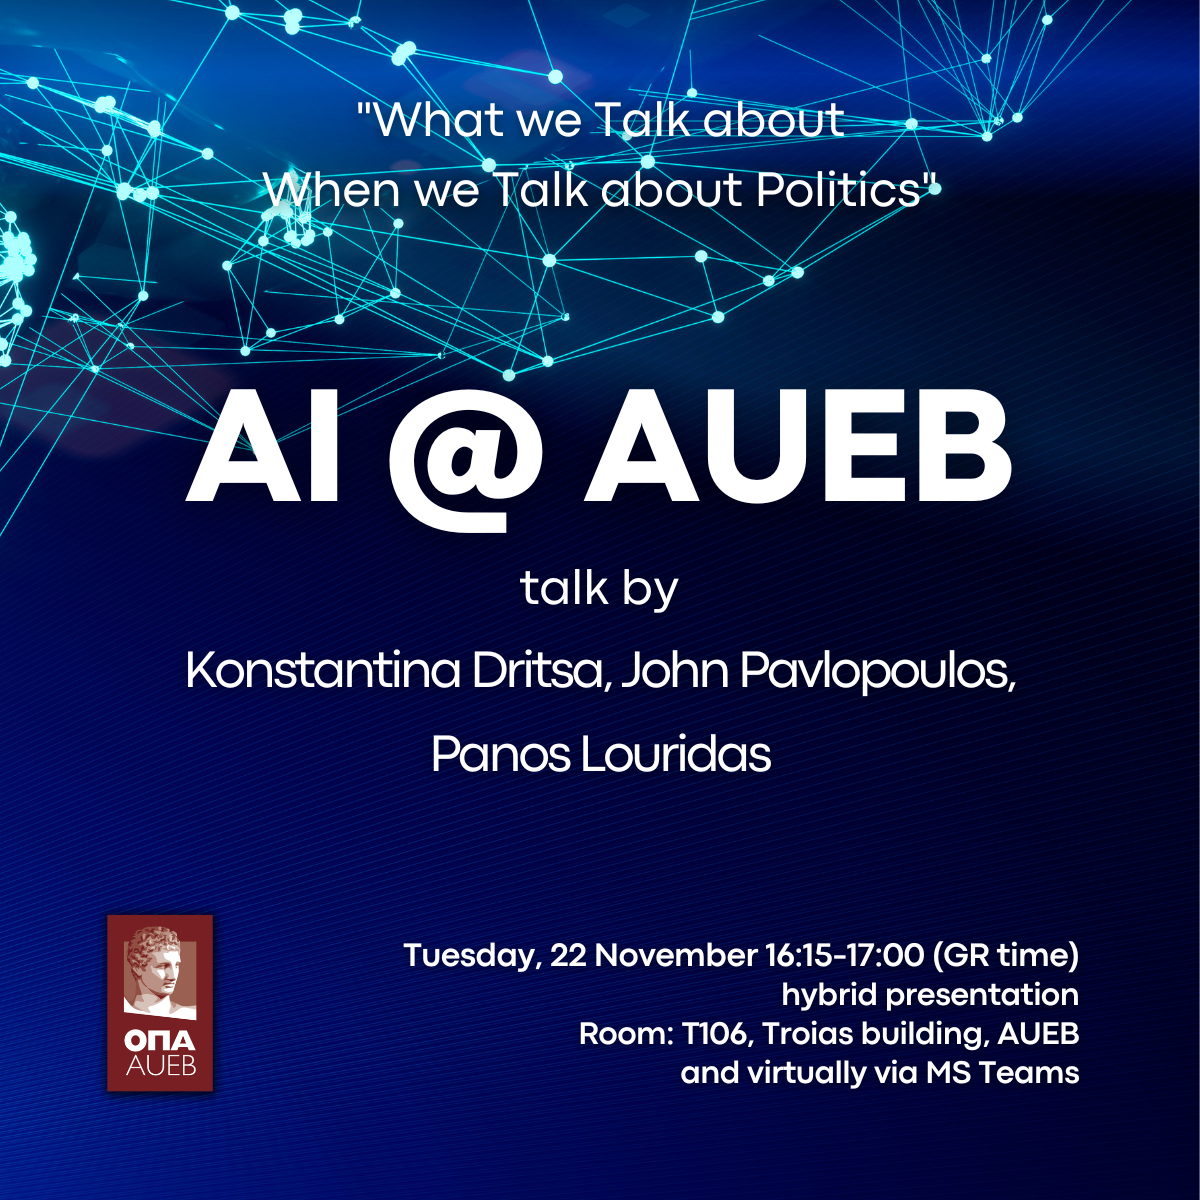 ΑΙ@AUEB talk: “What we Talk about When we Talk about Politics", by Konstantina Dritsa, John Pavlopoulos, Panos Louridas, 22 November, 16:15-17:00